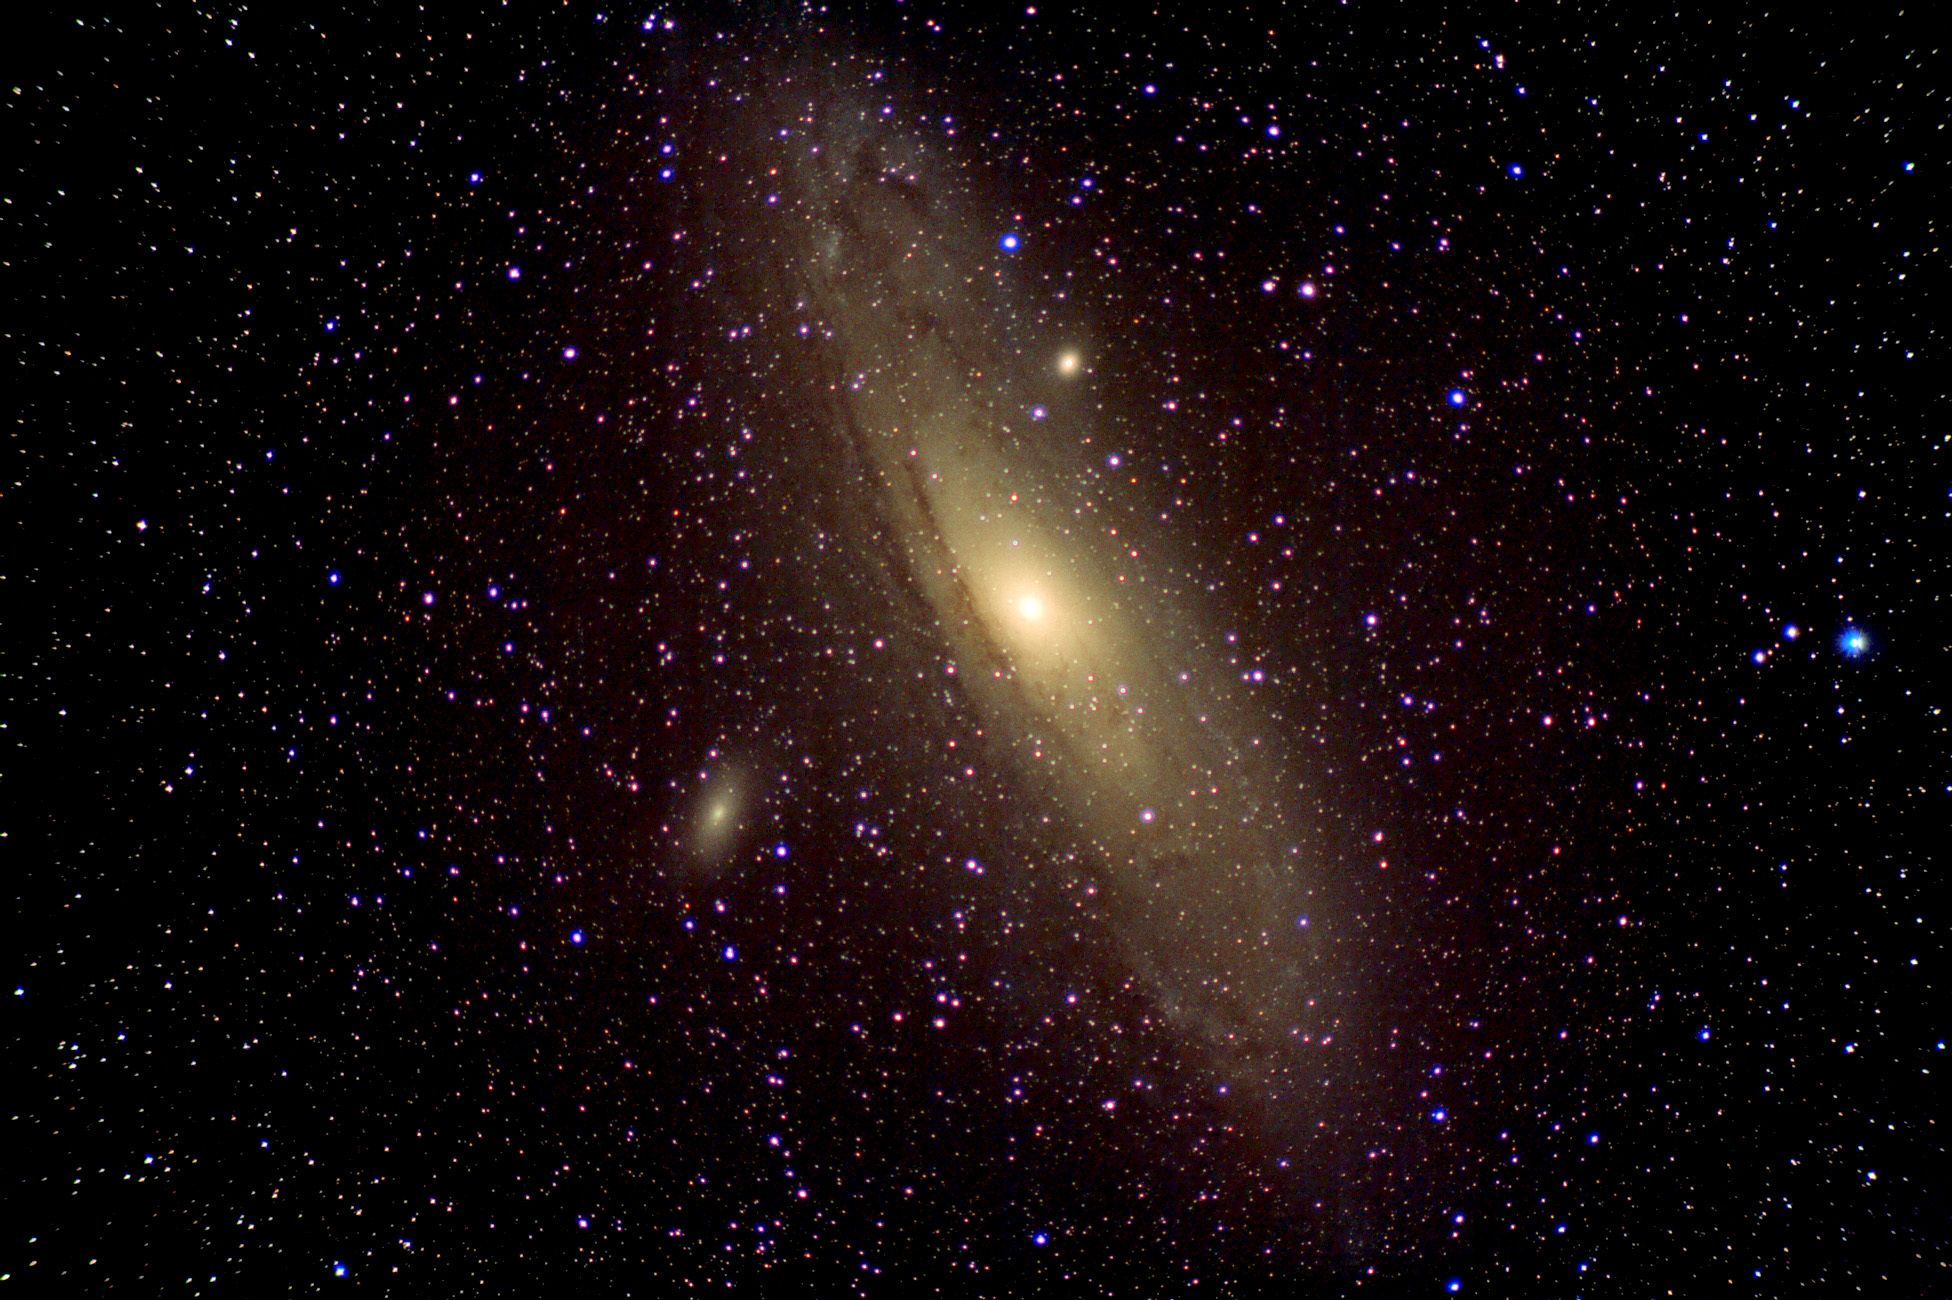 Andromeda Galaxy 10-25-13 at US Store